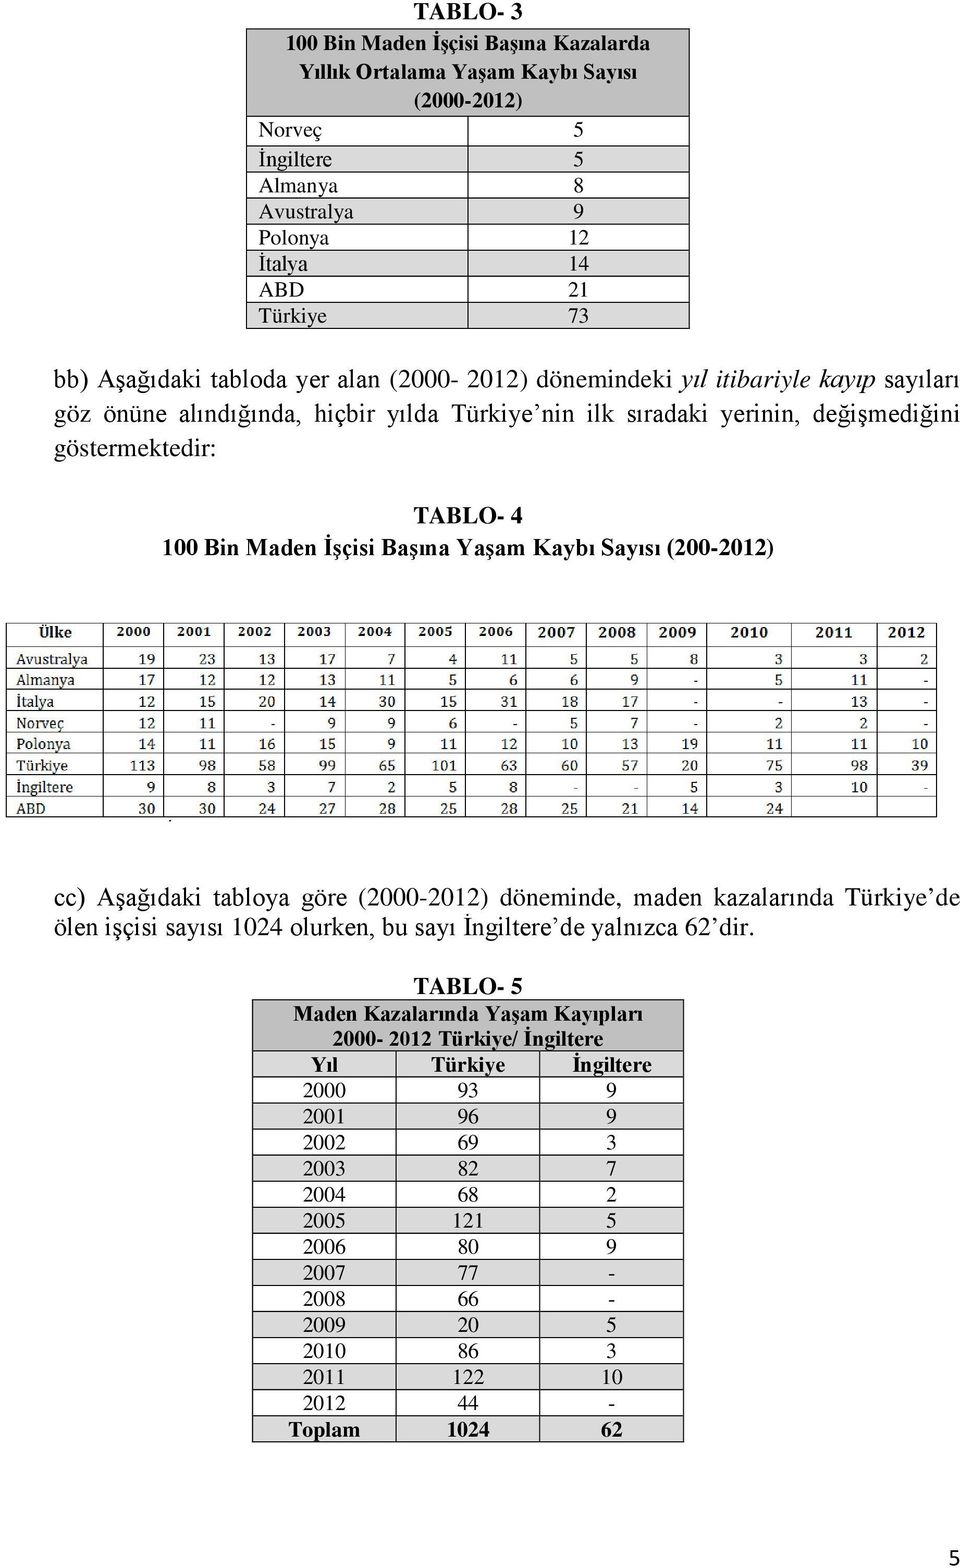 Yaşam Kaybı Sayısı (200-2012) cc) Aşağıdaki tabloya göre (2000-2012) döneminde, maden kazalarında Türkiye de ölen işçisi sayısı 1024 olurken, bu sayı İngiltere de yalnızca 62 dir.